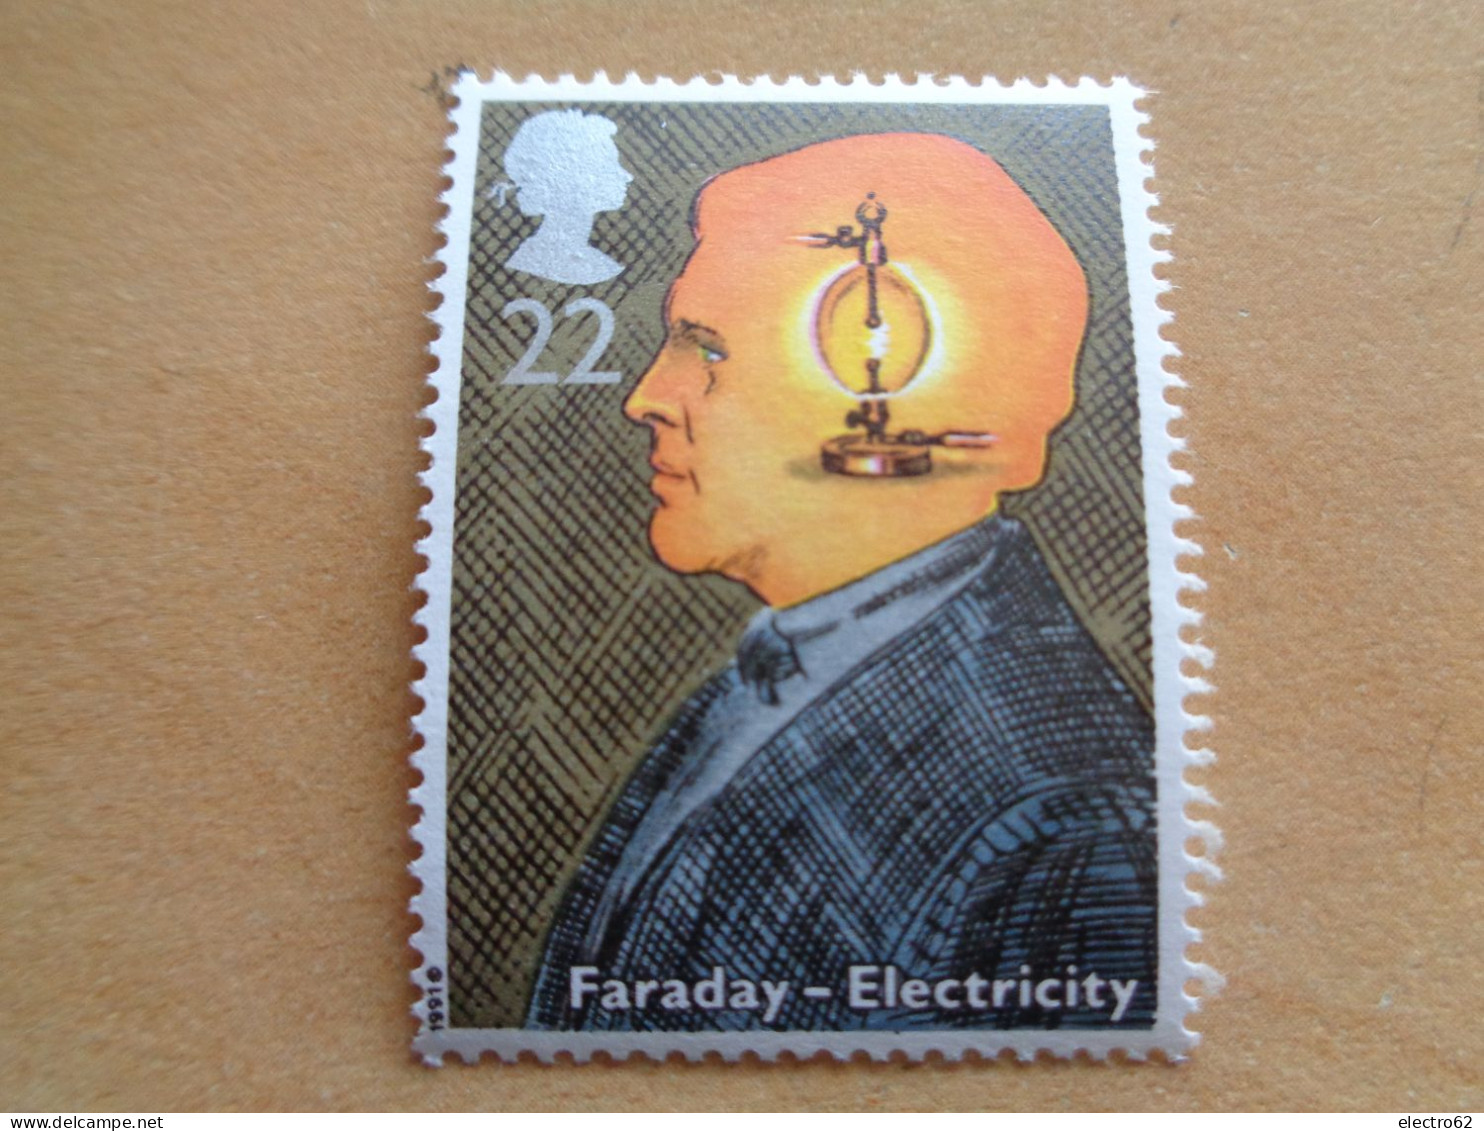 Grande Bretagne Great Britain Faraday électricité Electromagnétisme Electricity Großbitannien Brittannië 1991 Neuf - Elettricità